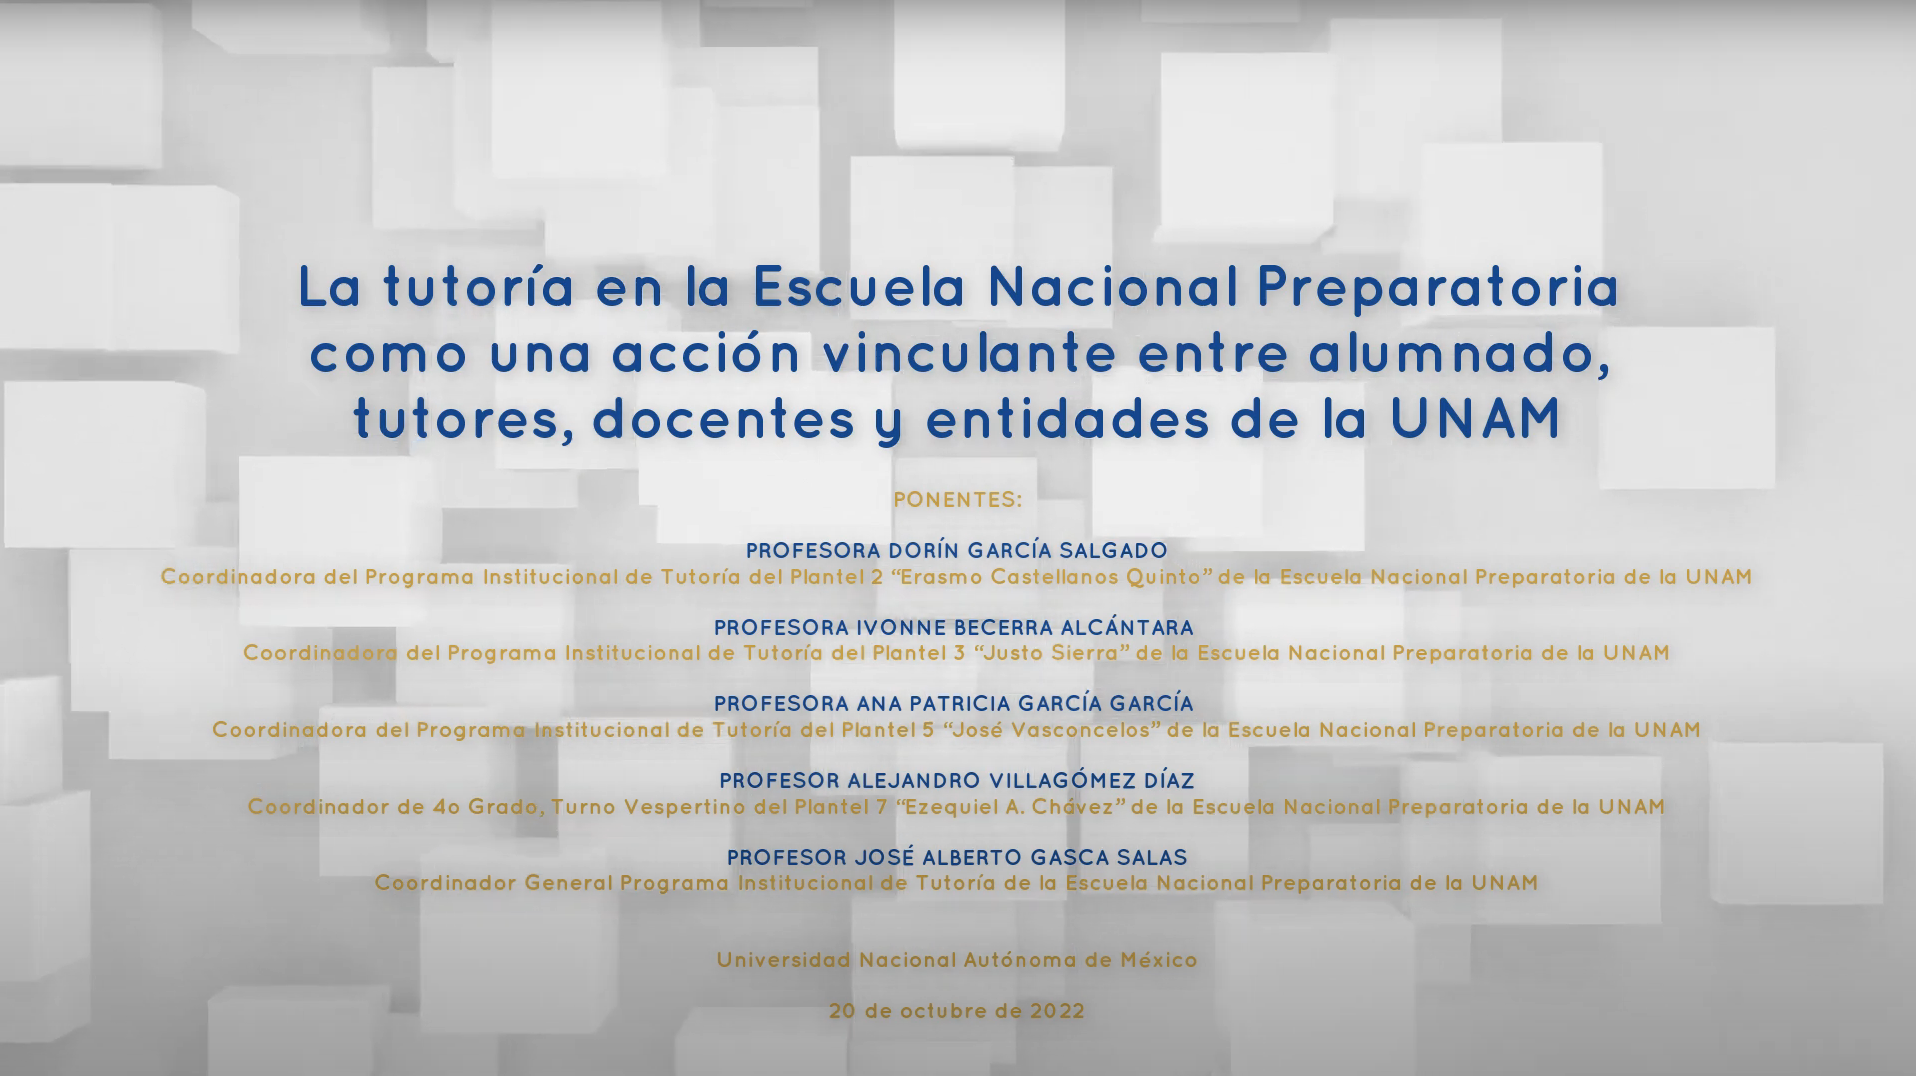 La tutoría en la ENP como acción vinculante entre alumnado, tutores, docentes y entidades de la UNAM